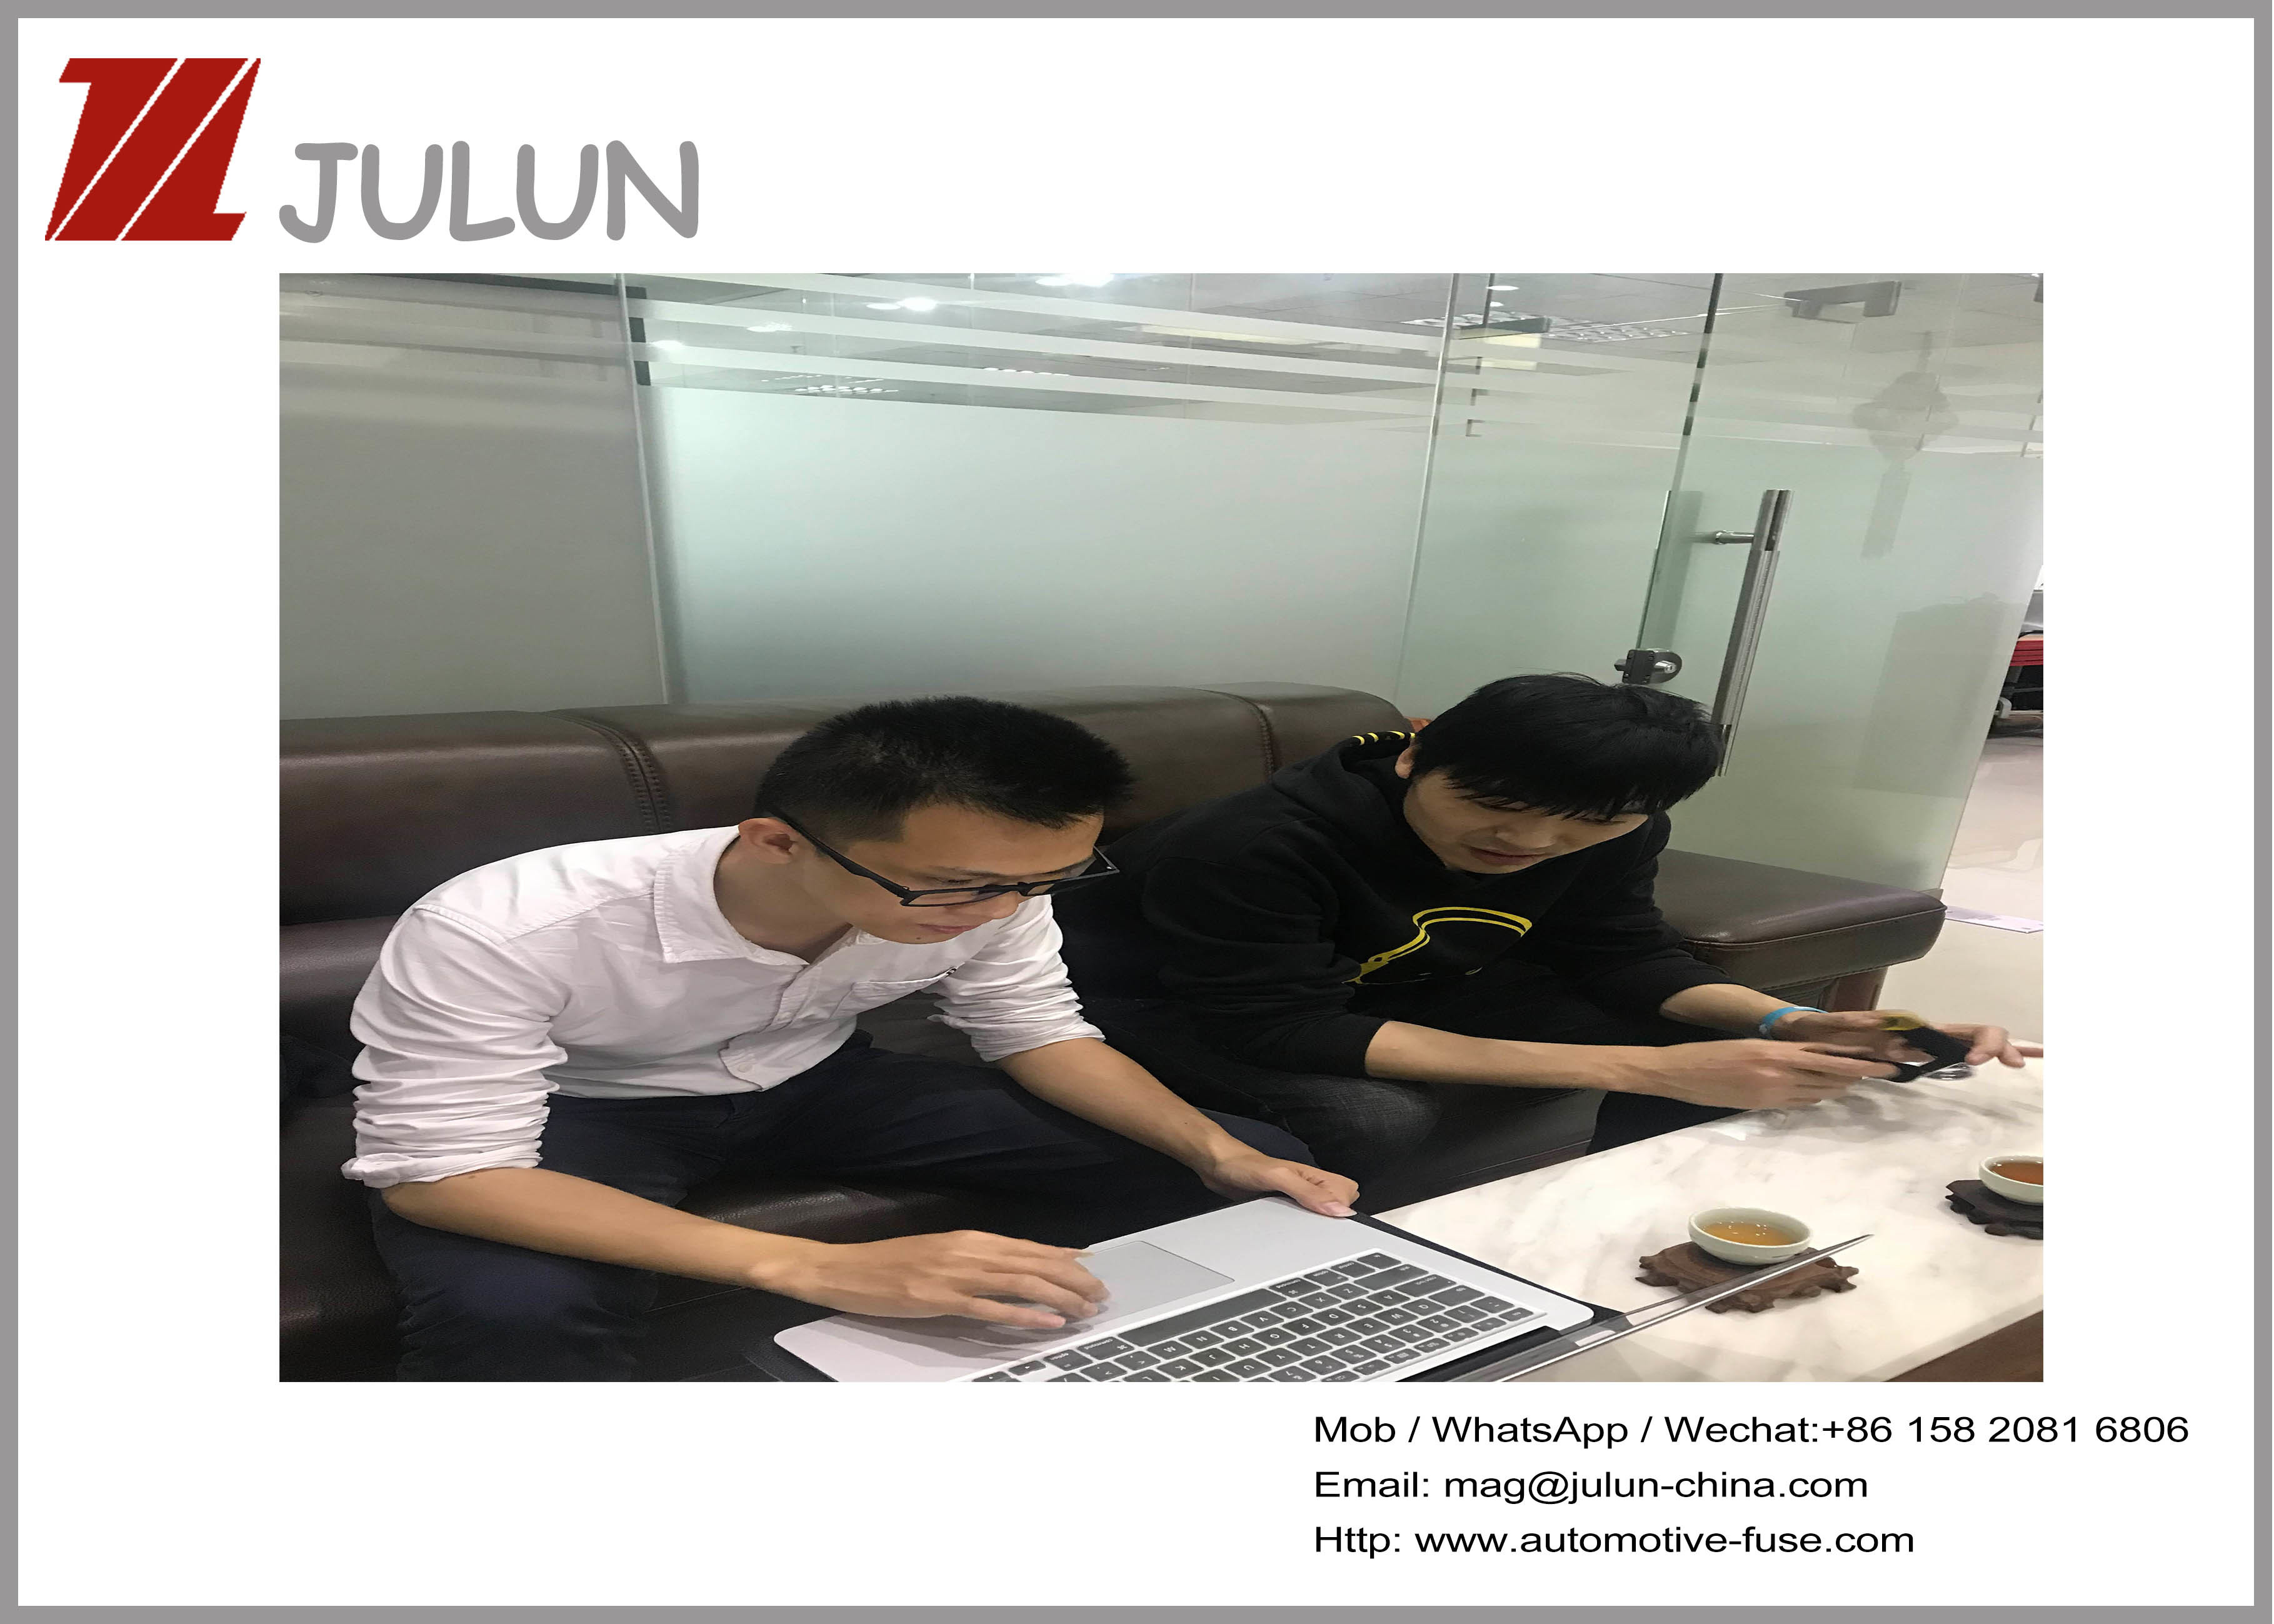 China dongguan Julun  electronics co.,ltd Perfil de la compañía